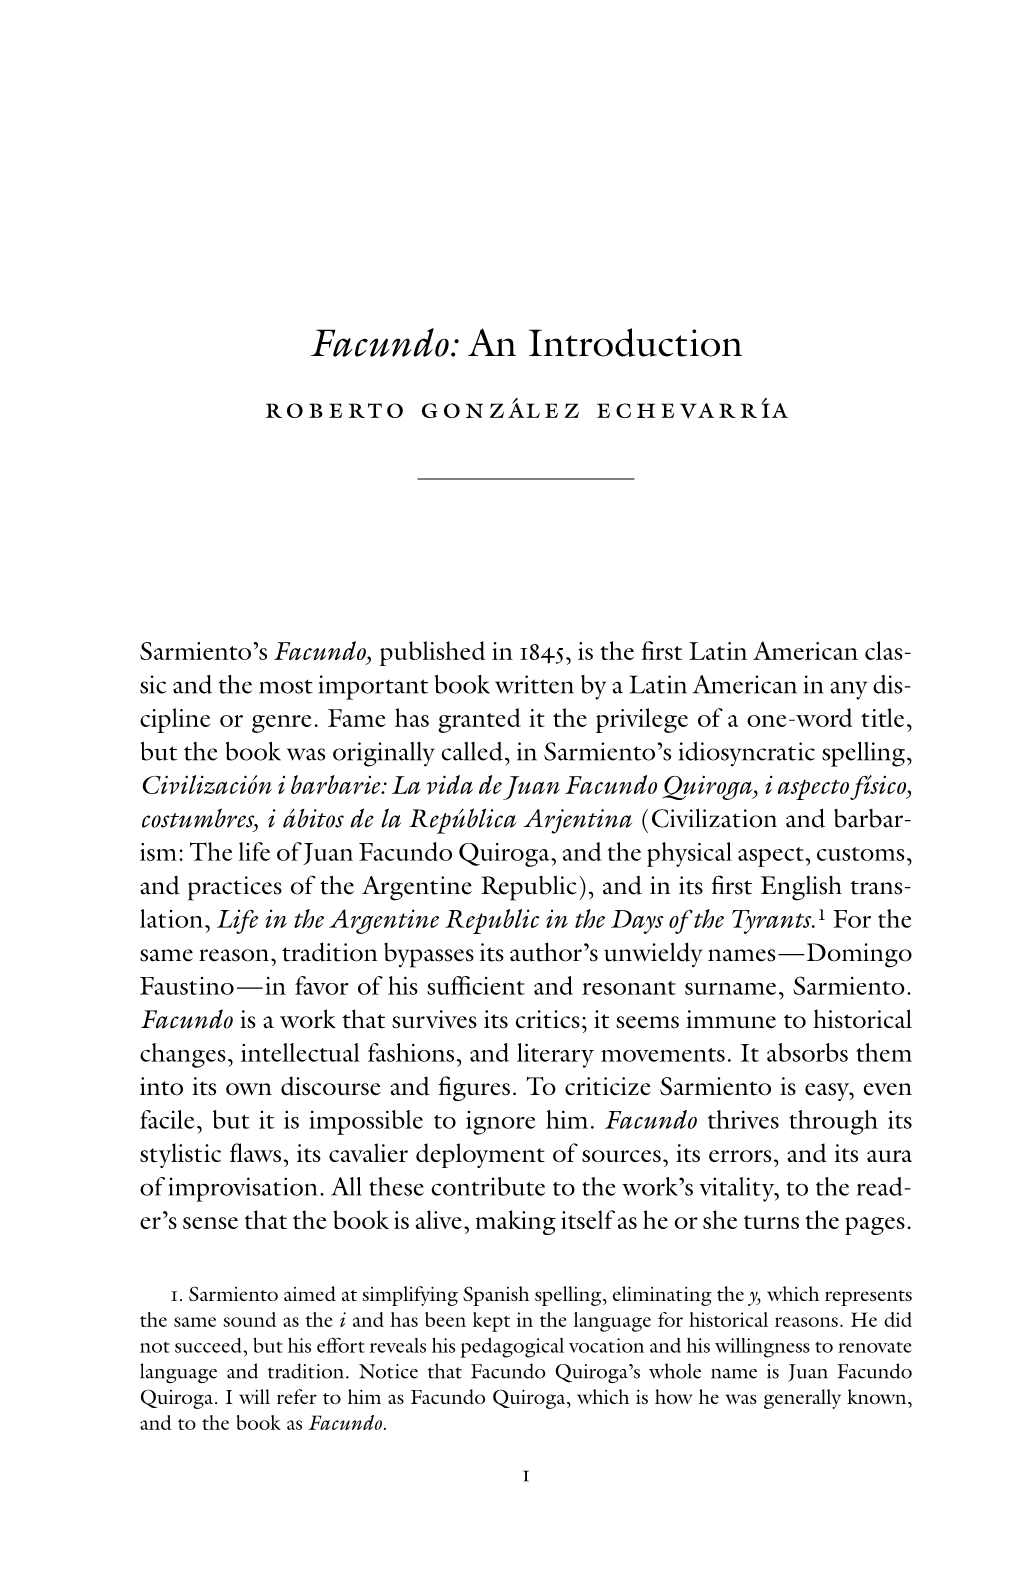 Facundo: an Introduction Roberto González Echevarría